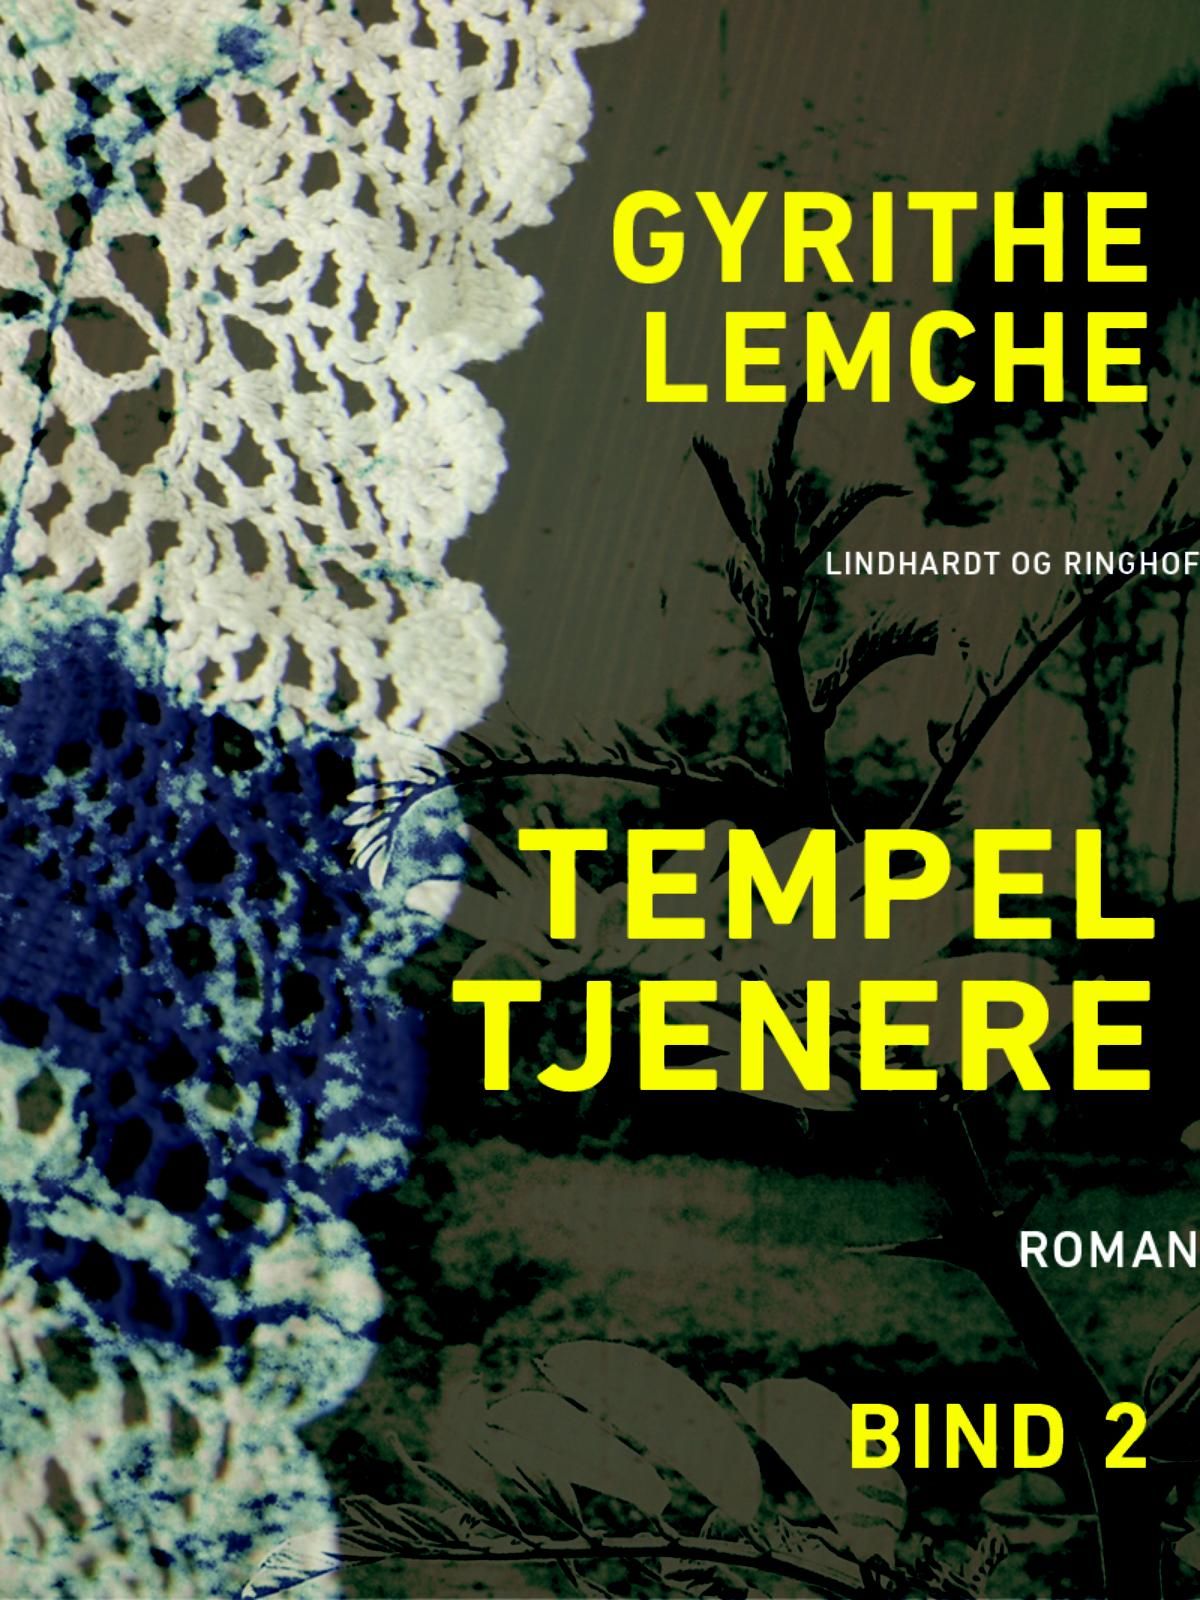 Tempeltjenere (bind 2), e-bok av Gyrithe Lemche